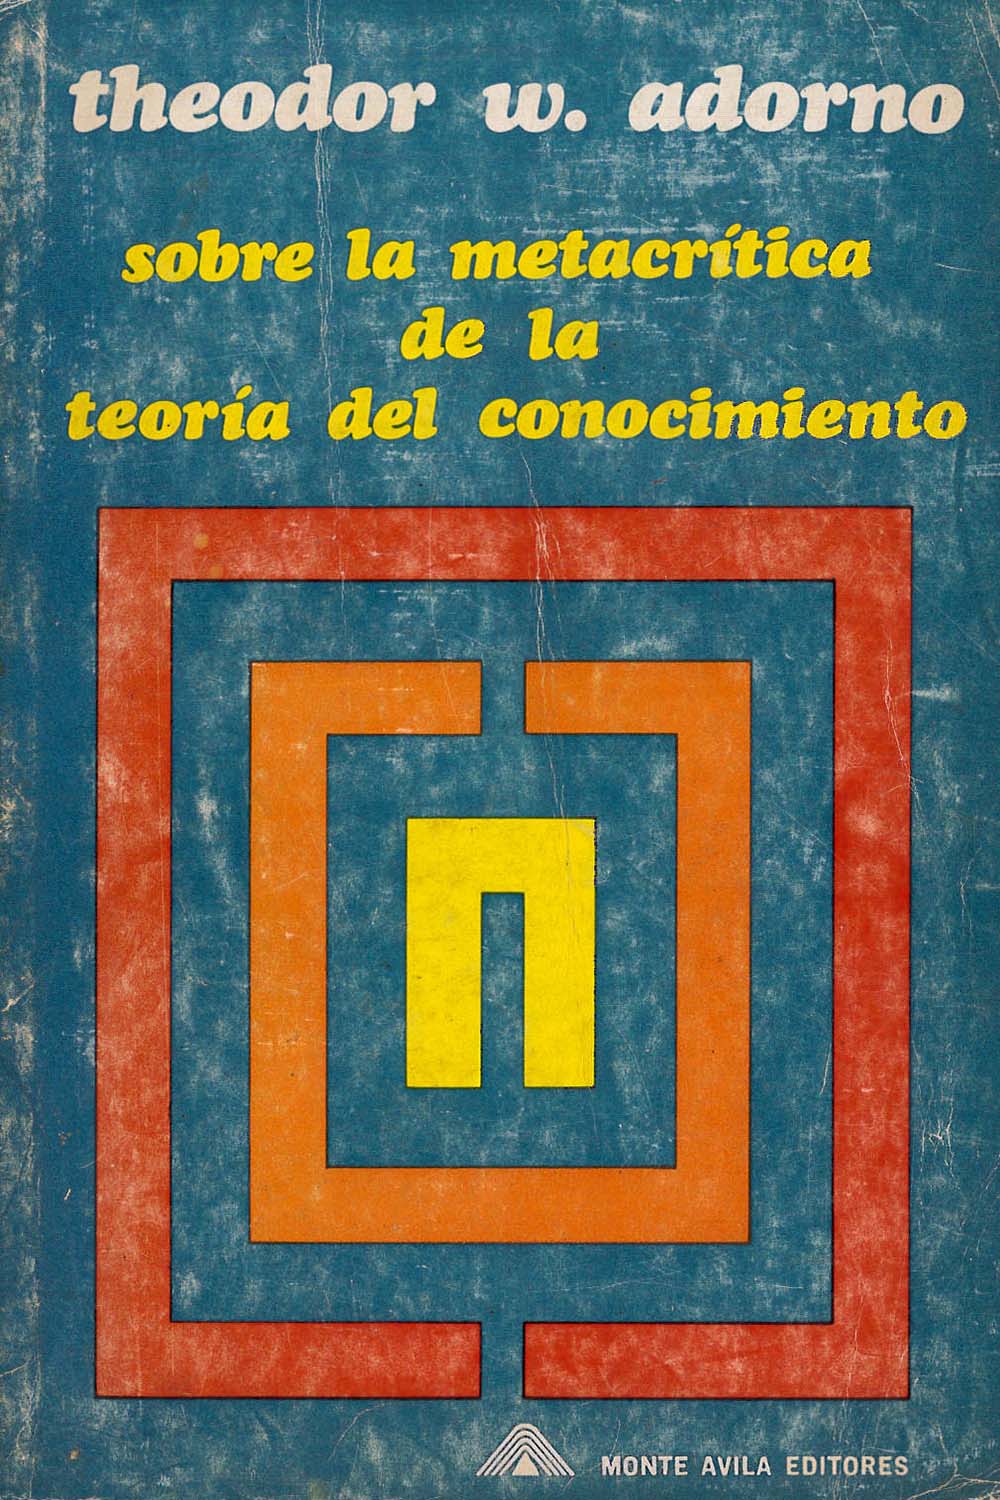 14 / 16 - B3279.H9 A36 Sobre la metacrítica de la teoría del conocimiento
Theodor W. Adorno - Monte Avila Editores C.A., Venezuela 1970